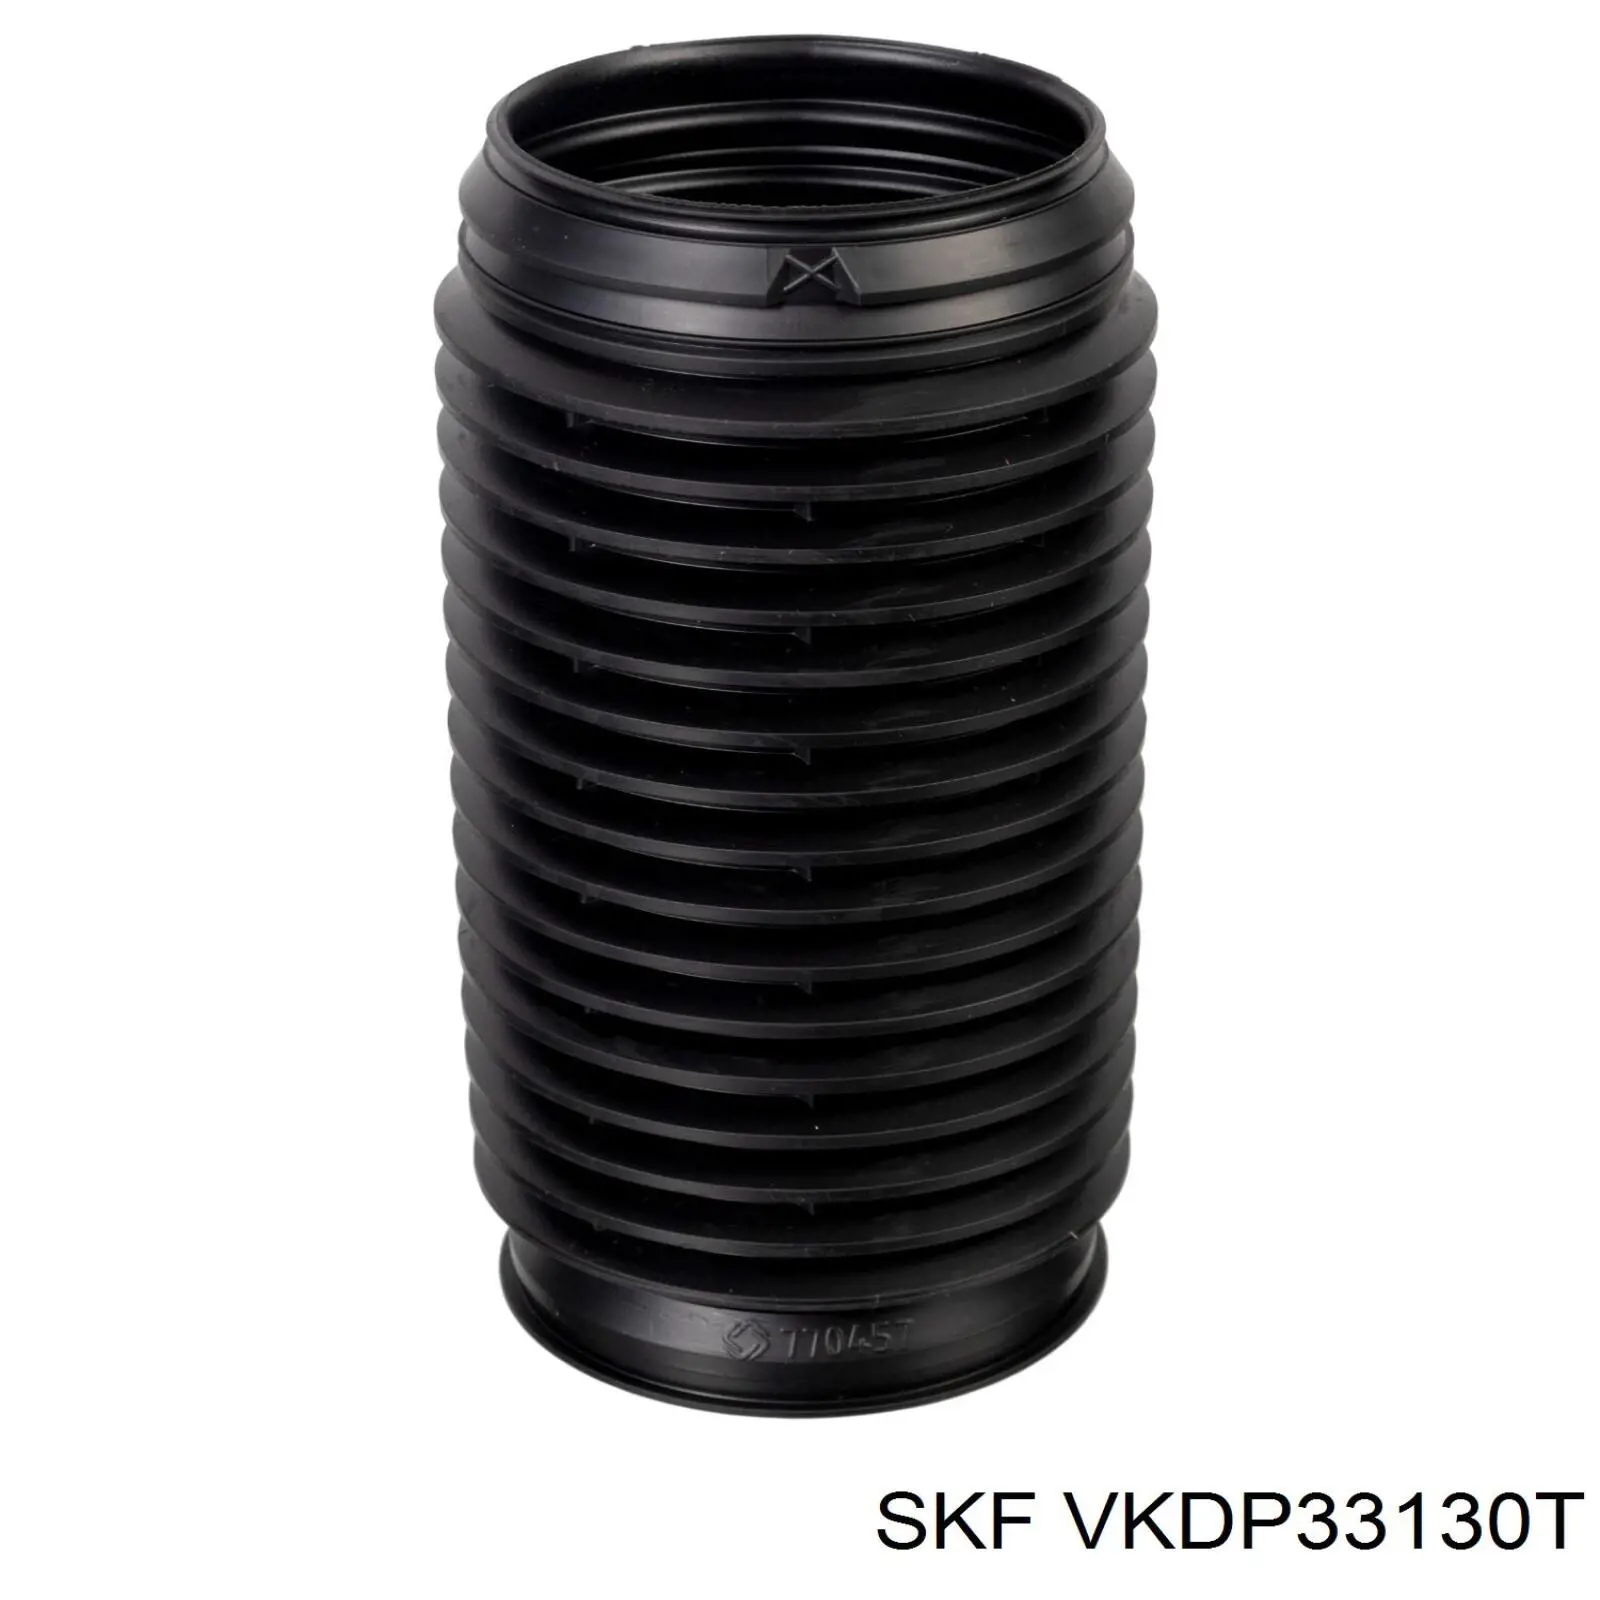 VKDP 33130 T SKF pára-choque (grade de proteção de amortecedor dianteiro + bota de proteção)